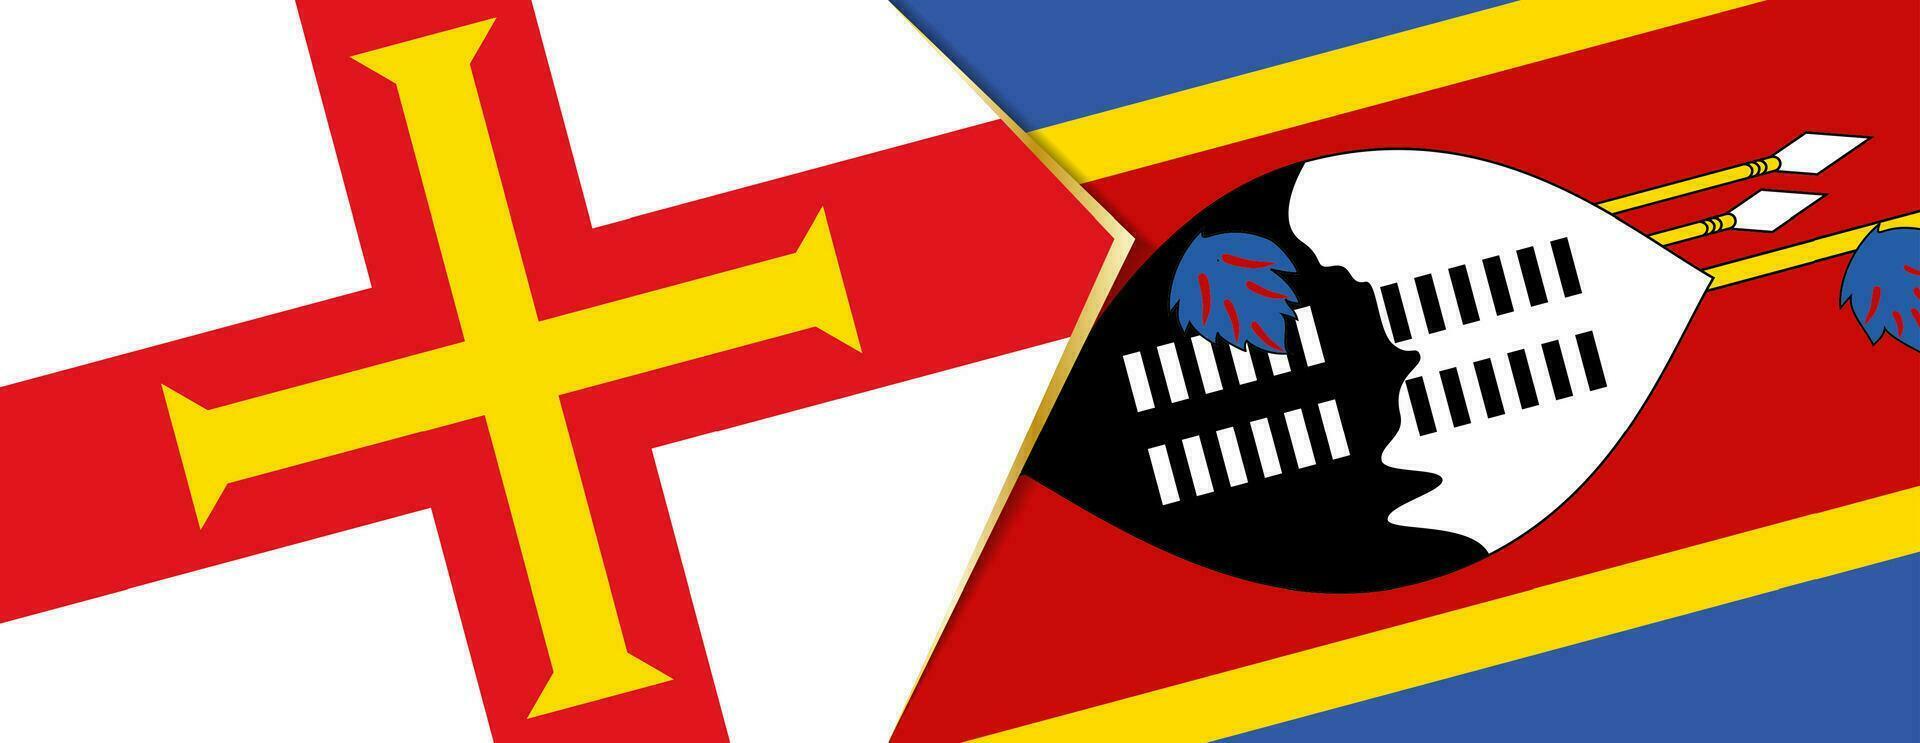 Guernesey et Swaziland drapeaux, deux vecteur drapeaux.